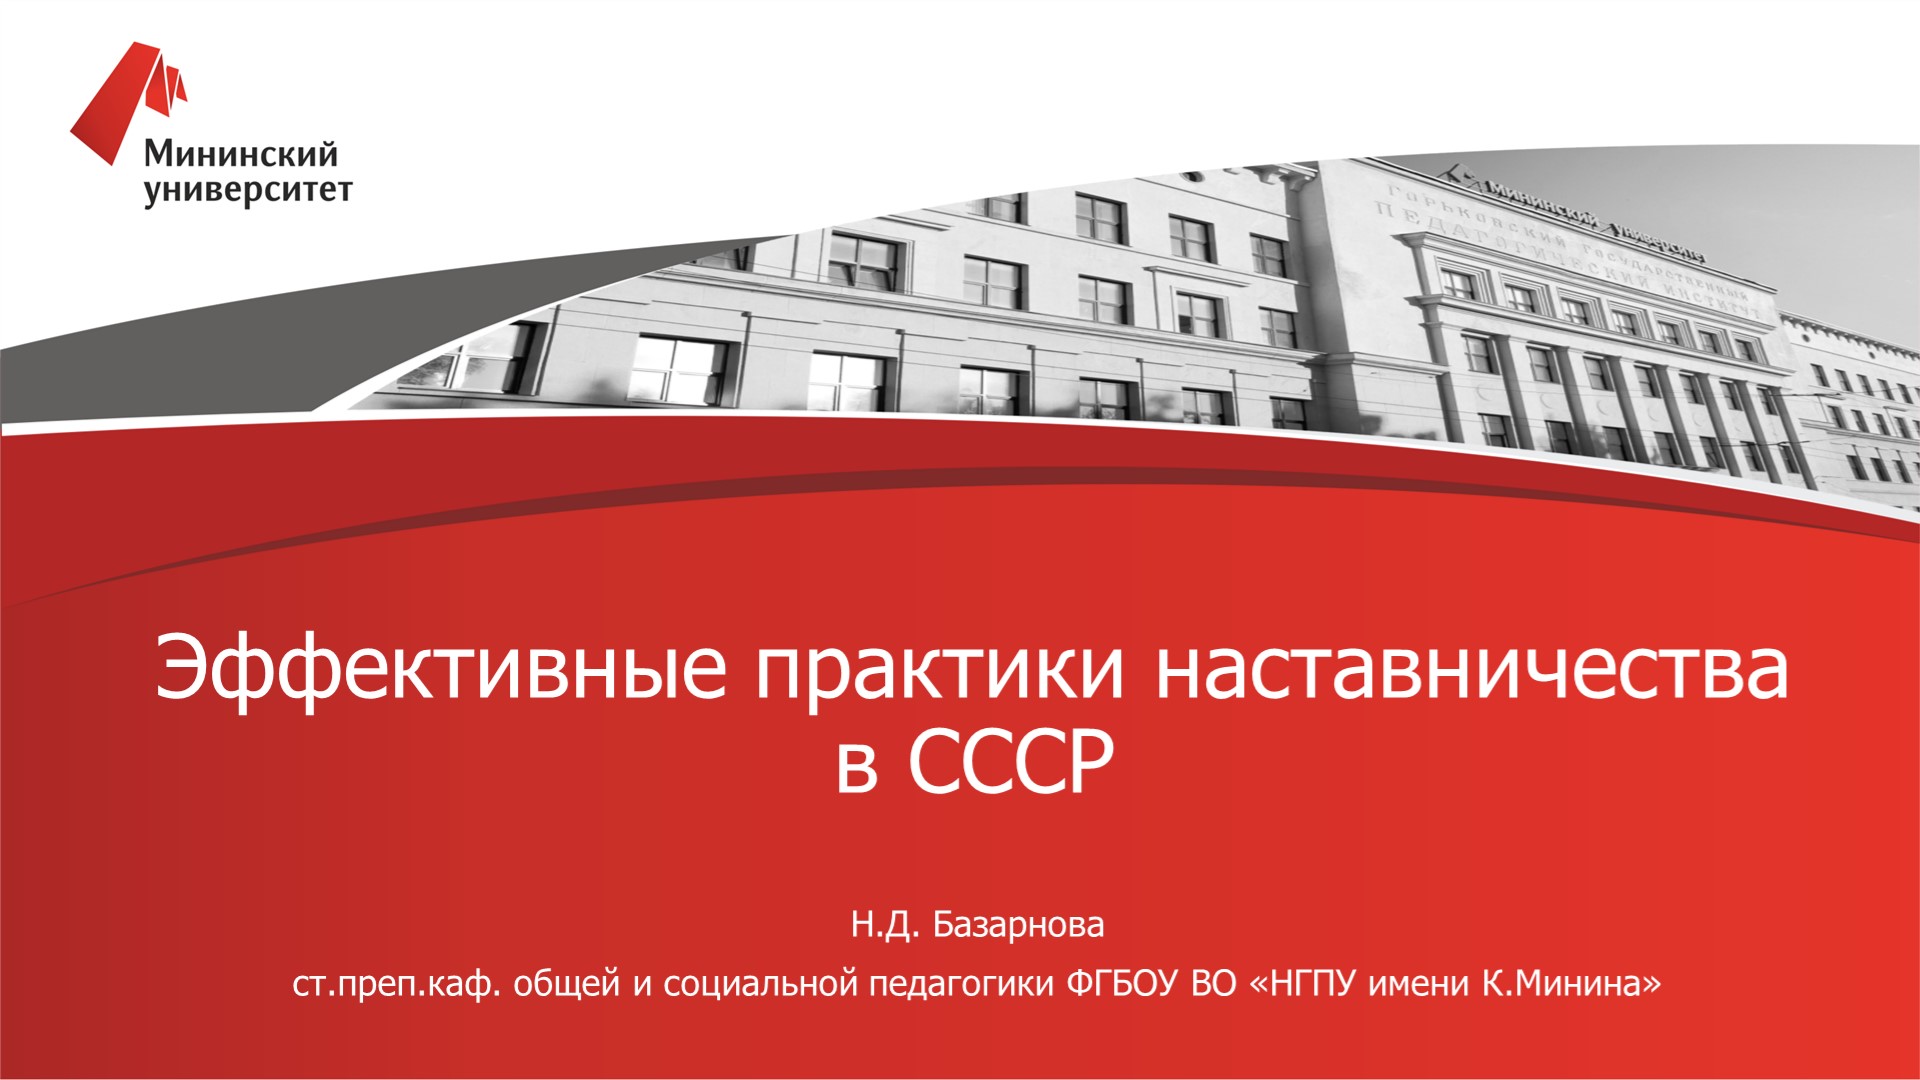 В Мининском университете прошел вебинар «Эффективные практики наставничества в СССР»